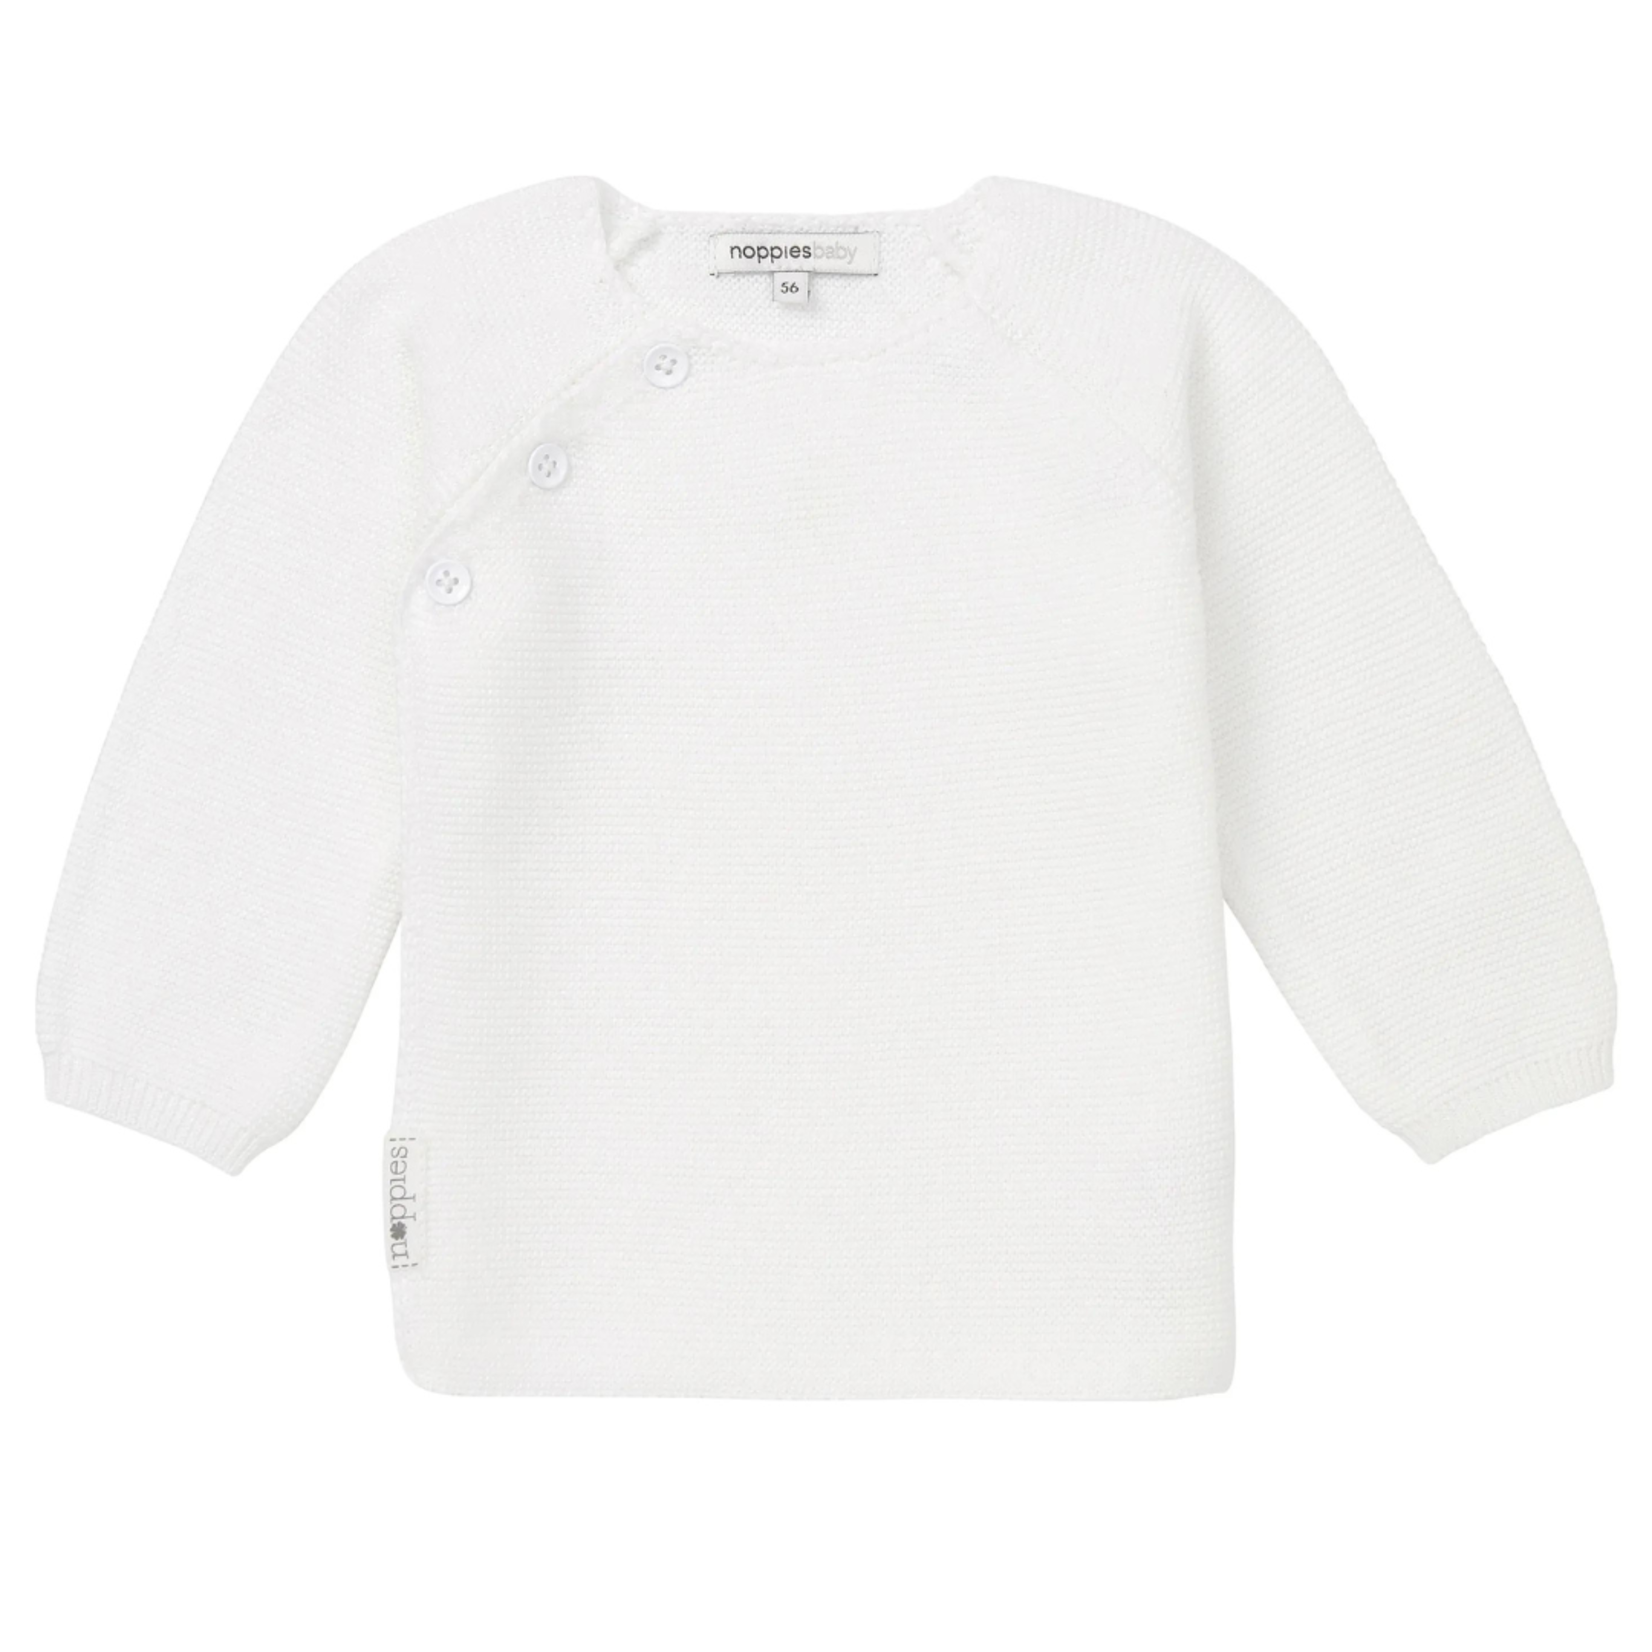 Noppies Noppies - Cardigan knit lange mouwen pino white